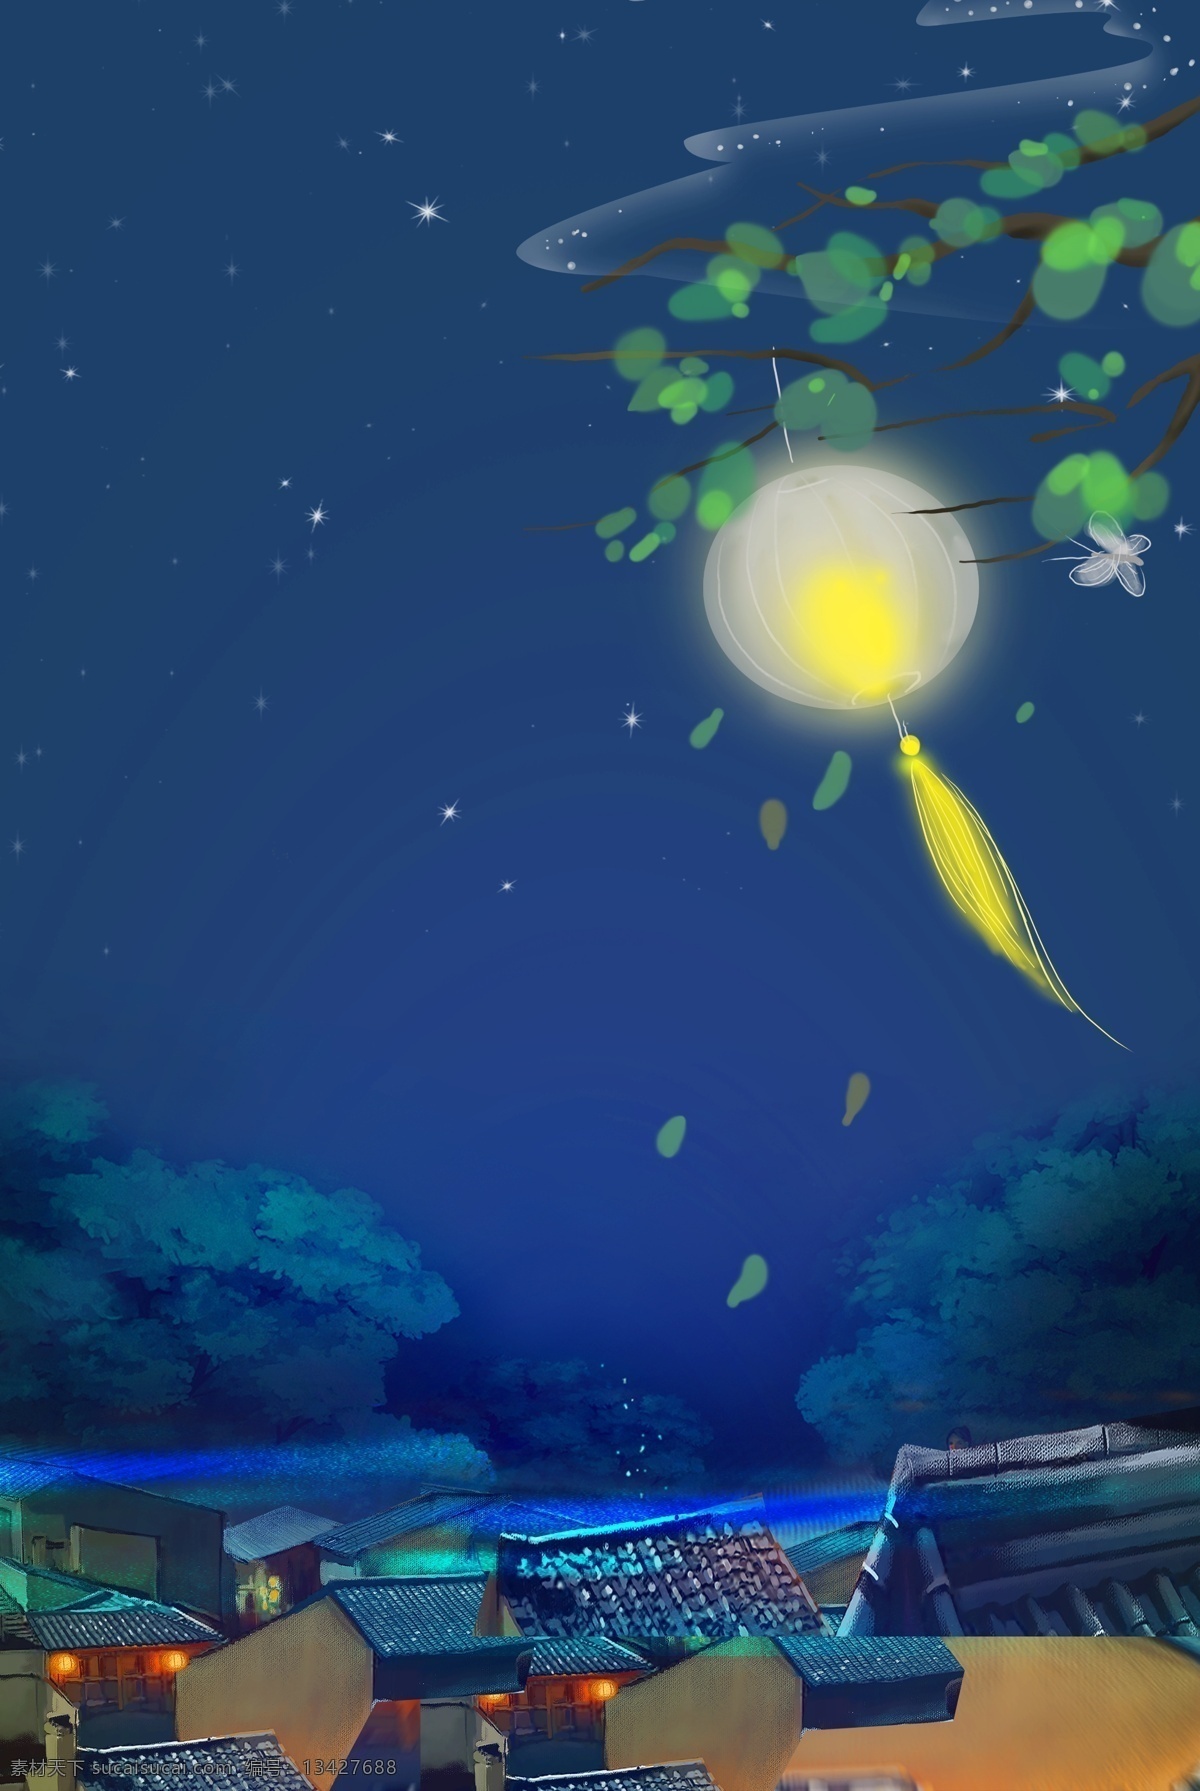 蓝色 手绘 月色 下 村庄 背景 月色下的村庄 蓝色背景 灯笼 大树 中秋节 夜空